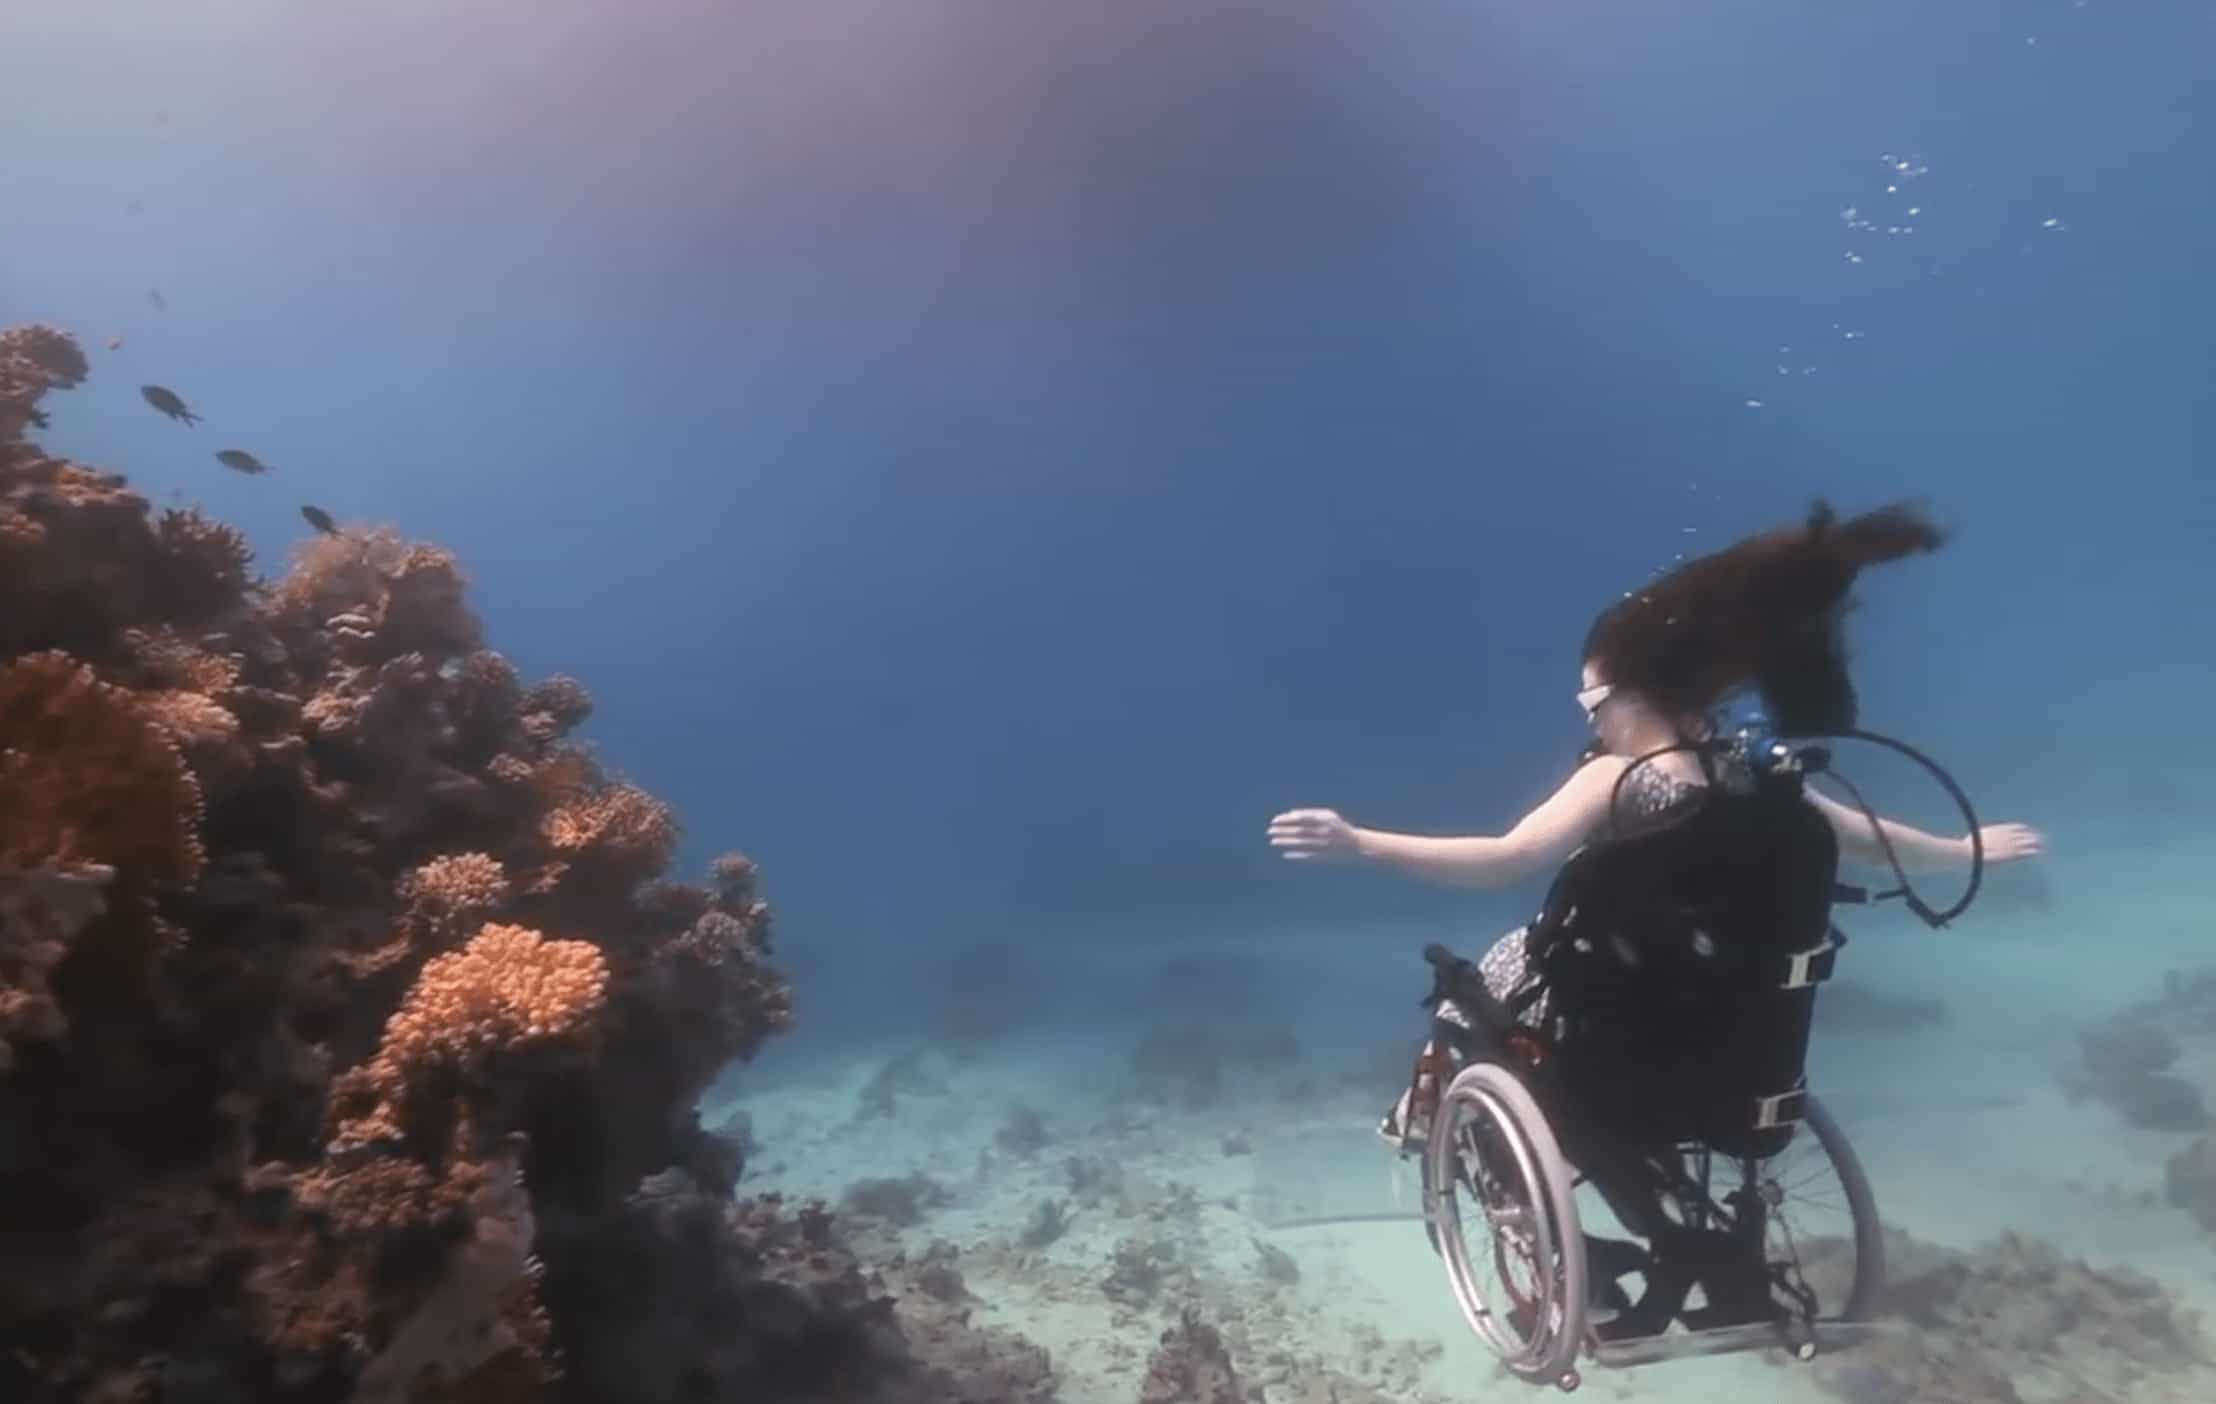 La Sirena en Silla de Ruedas: "La gente ve la silla de ruedas como un símbolo negativo, para mi fue la libertad"